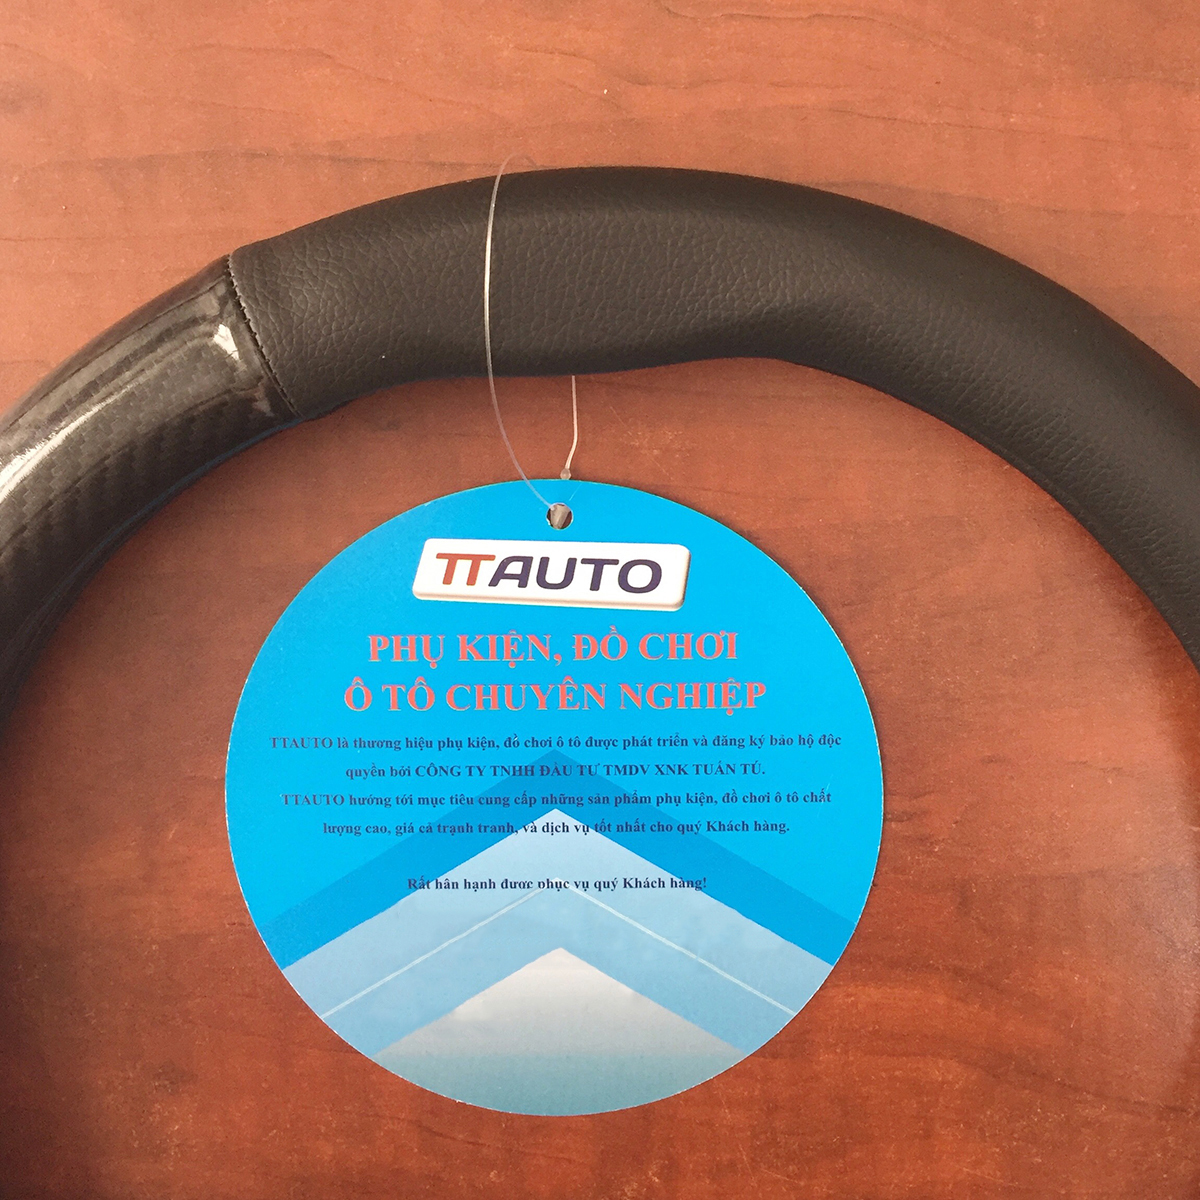 Bọc vô lăng TTAUTO kiểu dáng D Cut cho xe ô tô từ 4 đến 7 chỗ chất liệu da vân carbon cao cấp (Đen)